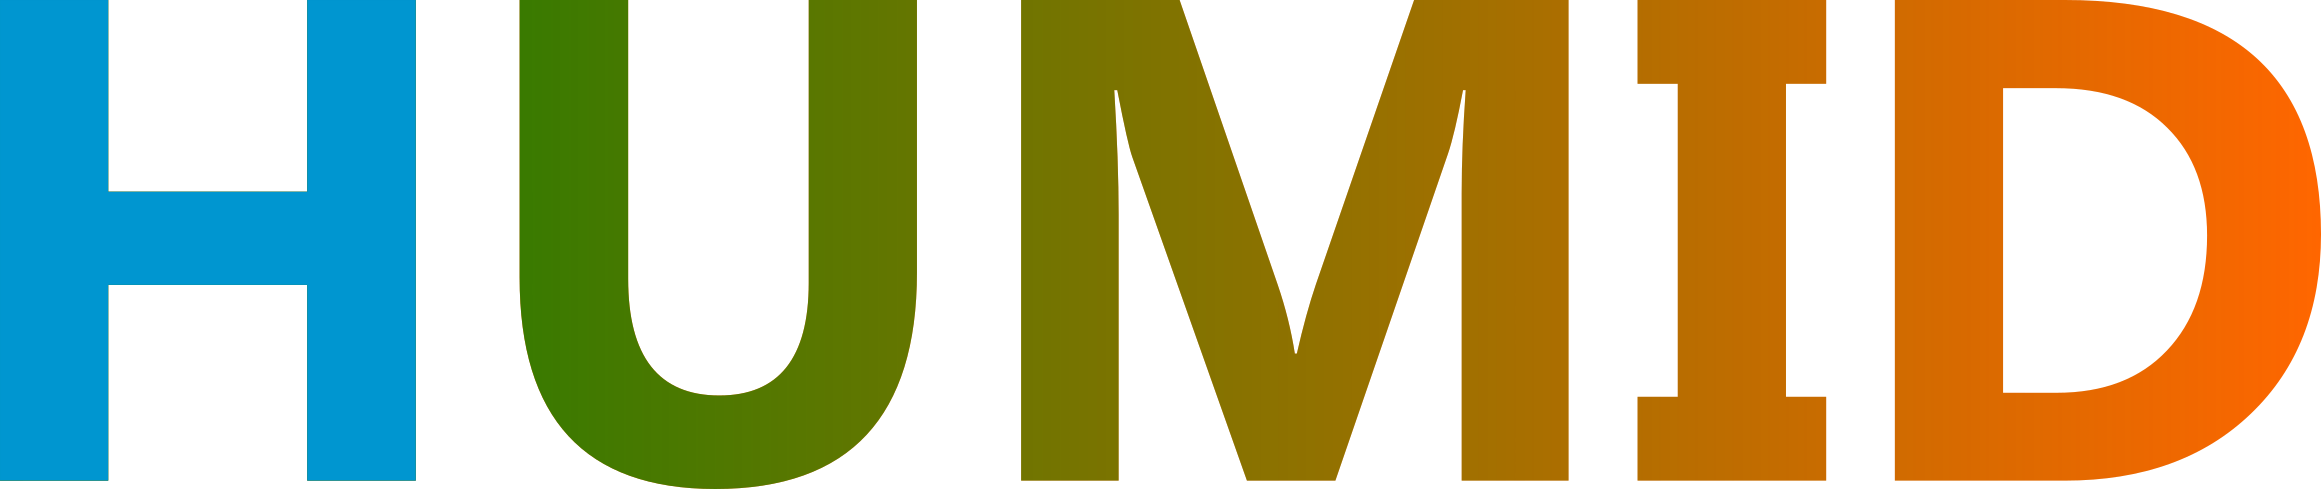 Logo HUMID